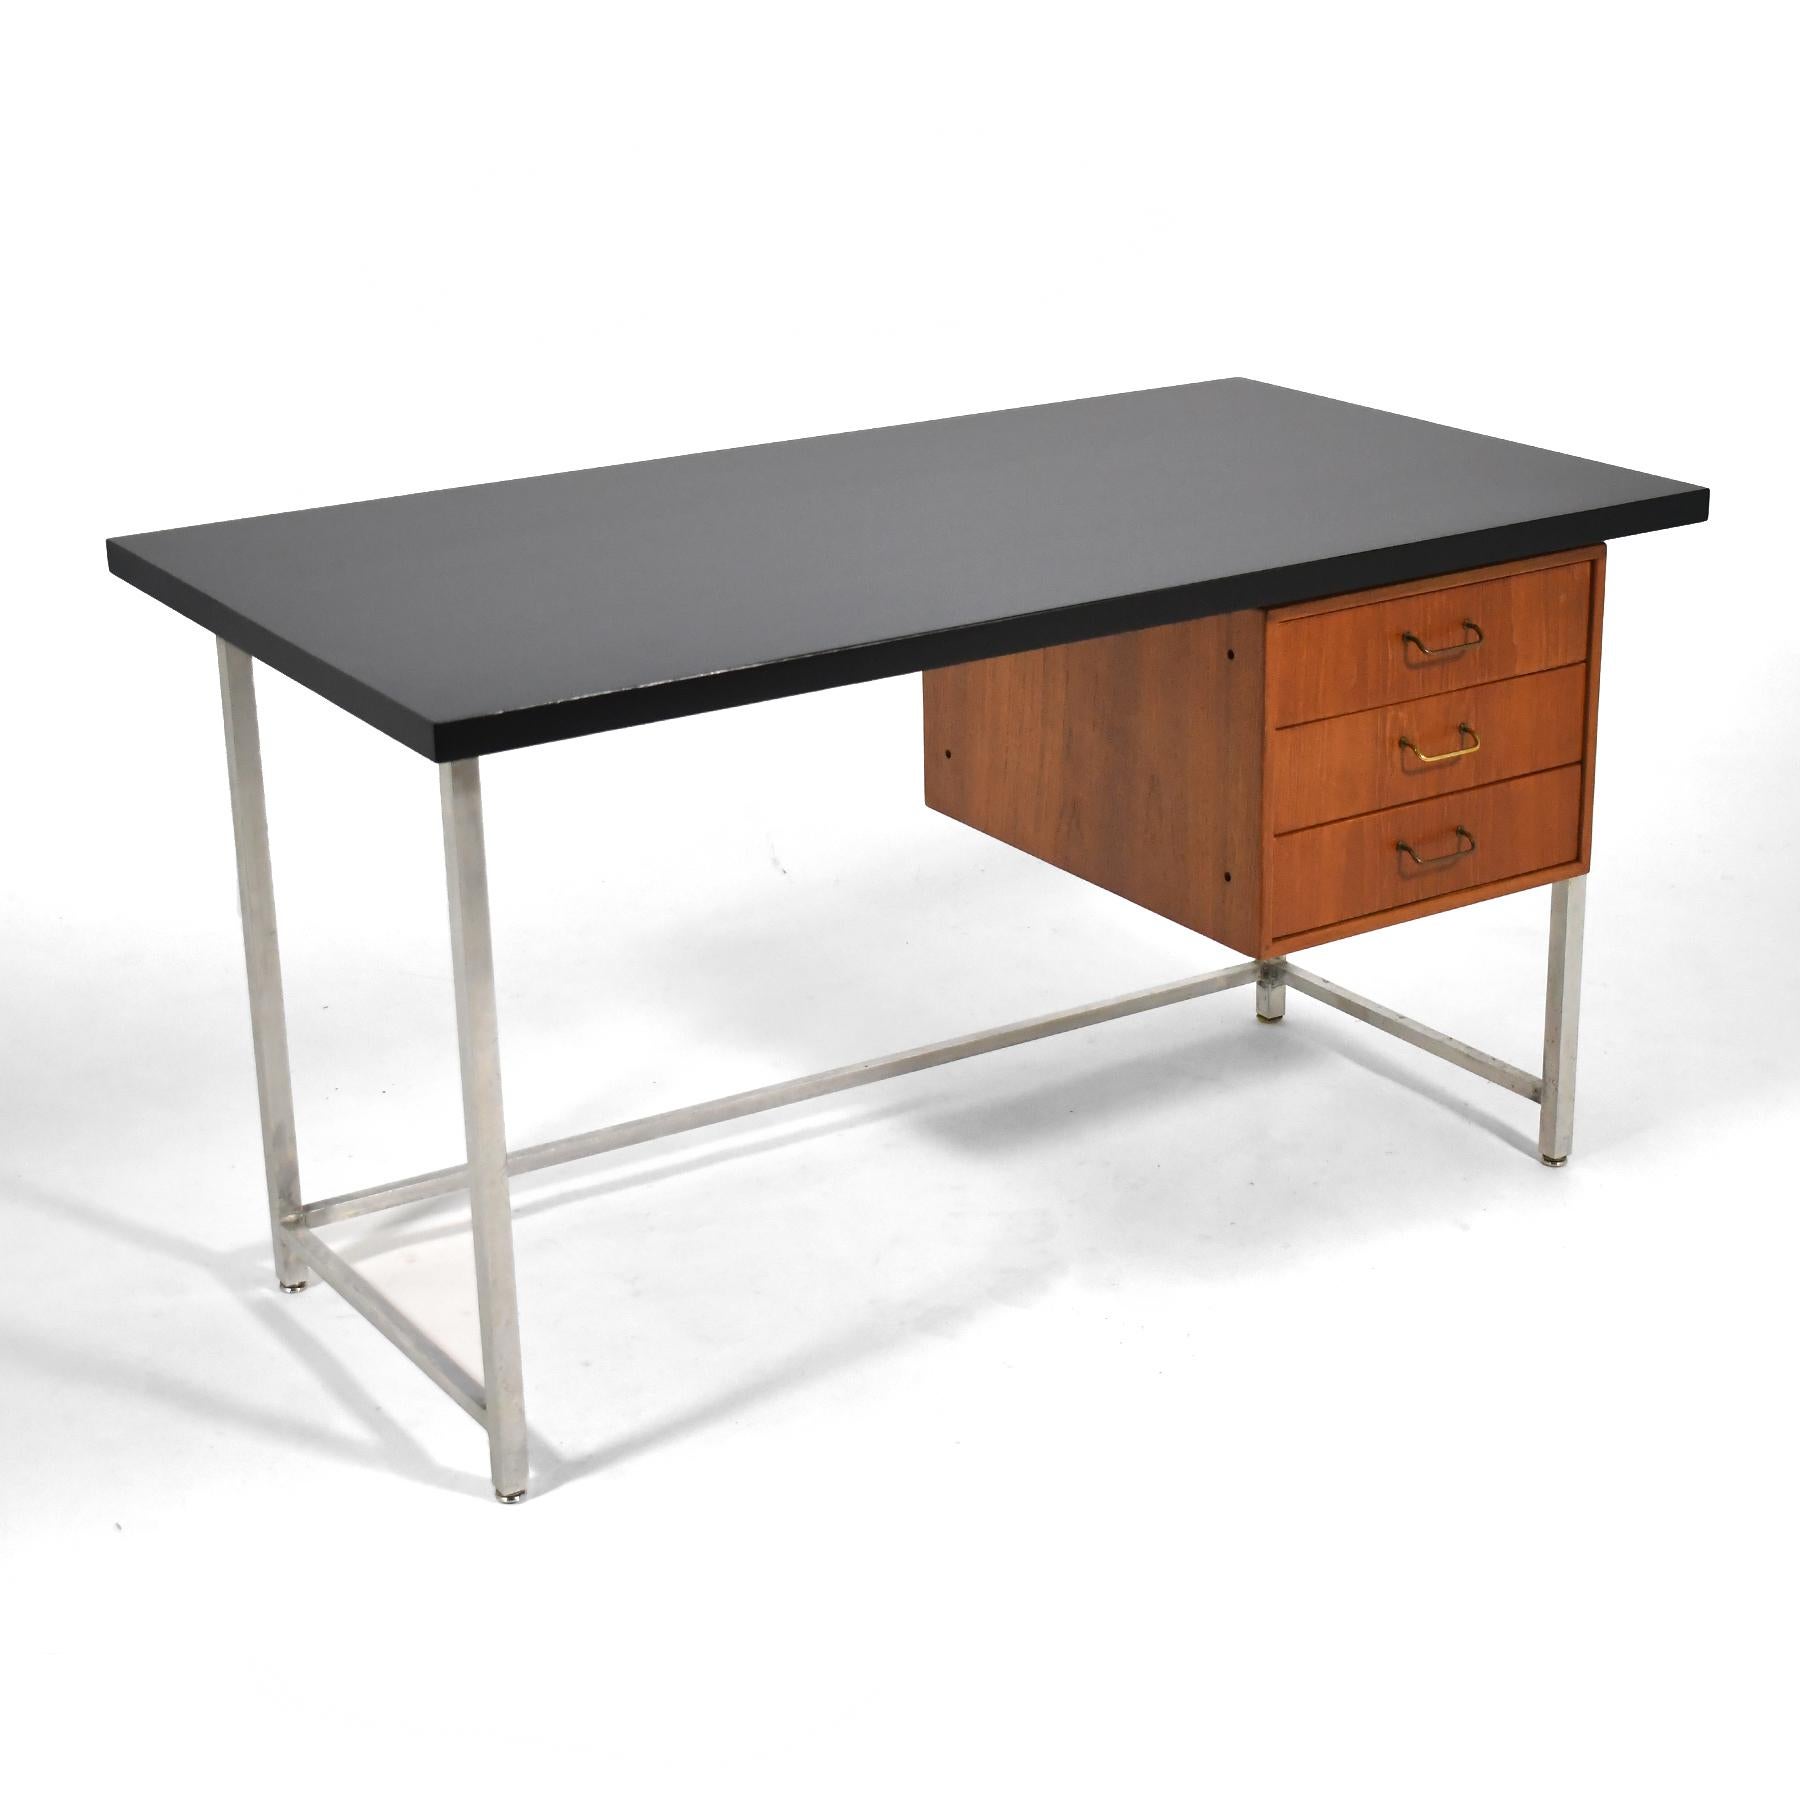 Dieser schöne, moderne dänische Schreibtisch von Torben Strandgaard wurde von Møbelfabriken Falster in feinster Handarbeit hergestellt und ist mit einem architektonischen Aluminiumrahmen, einem schwebenden Schrank und Messingdrahtgriffen an den drei